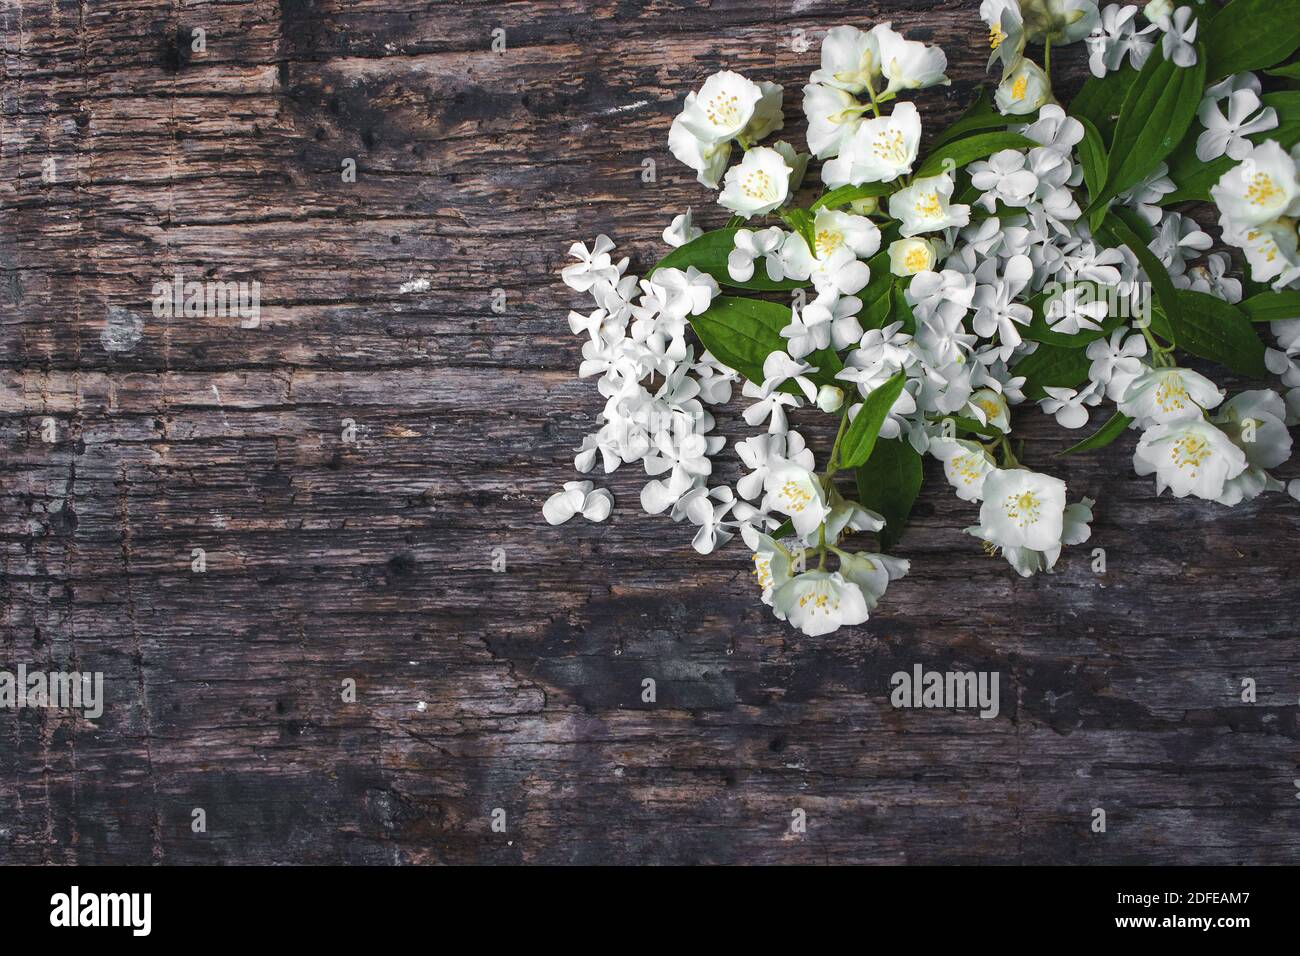 Frühling Jasmin Blumen auf Holz Hintergrund. Valentinstag Grußkarte Platz kopieren Draufsicht Stockfoto